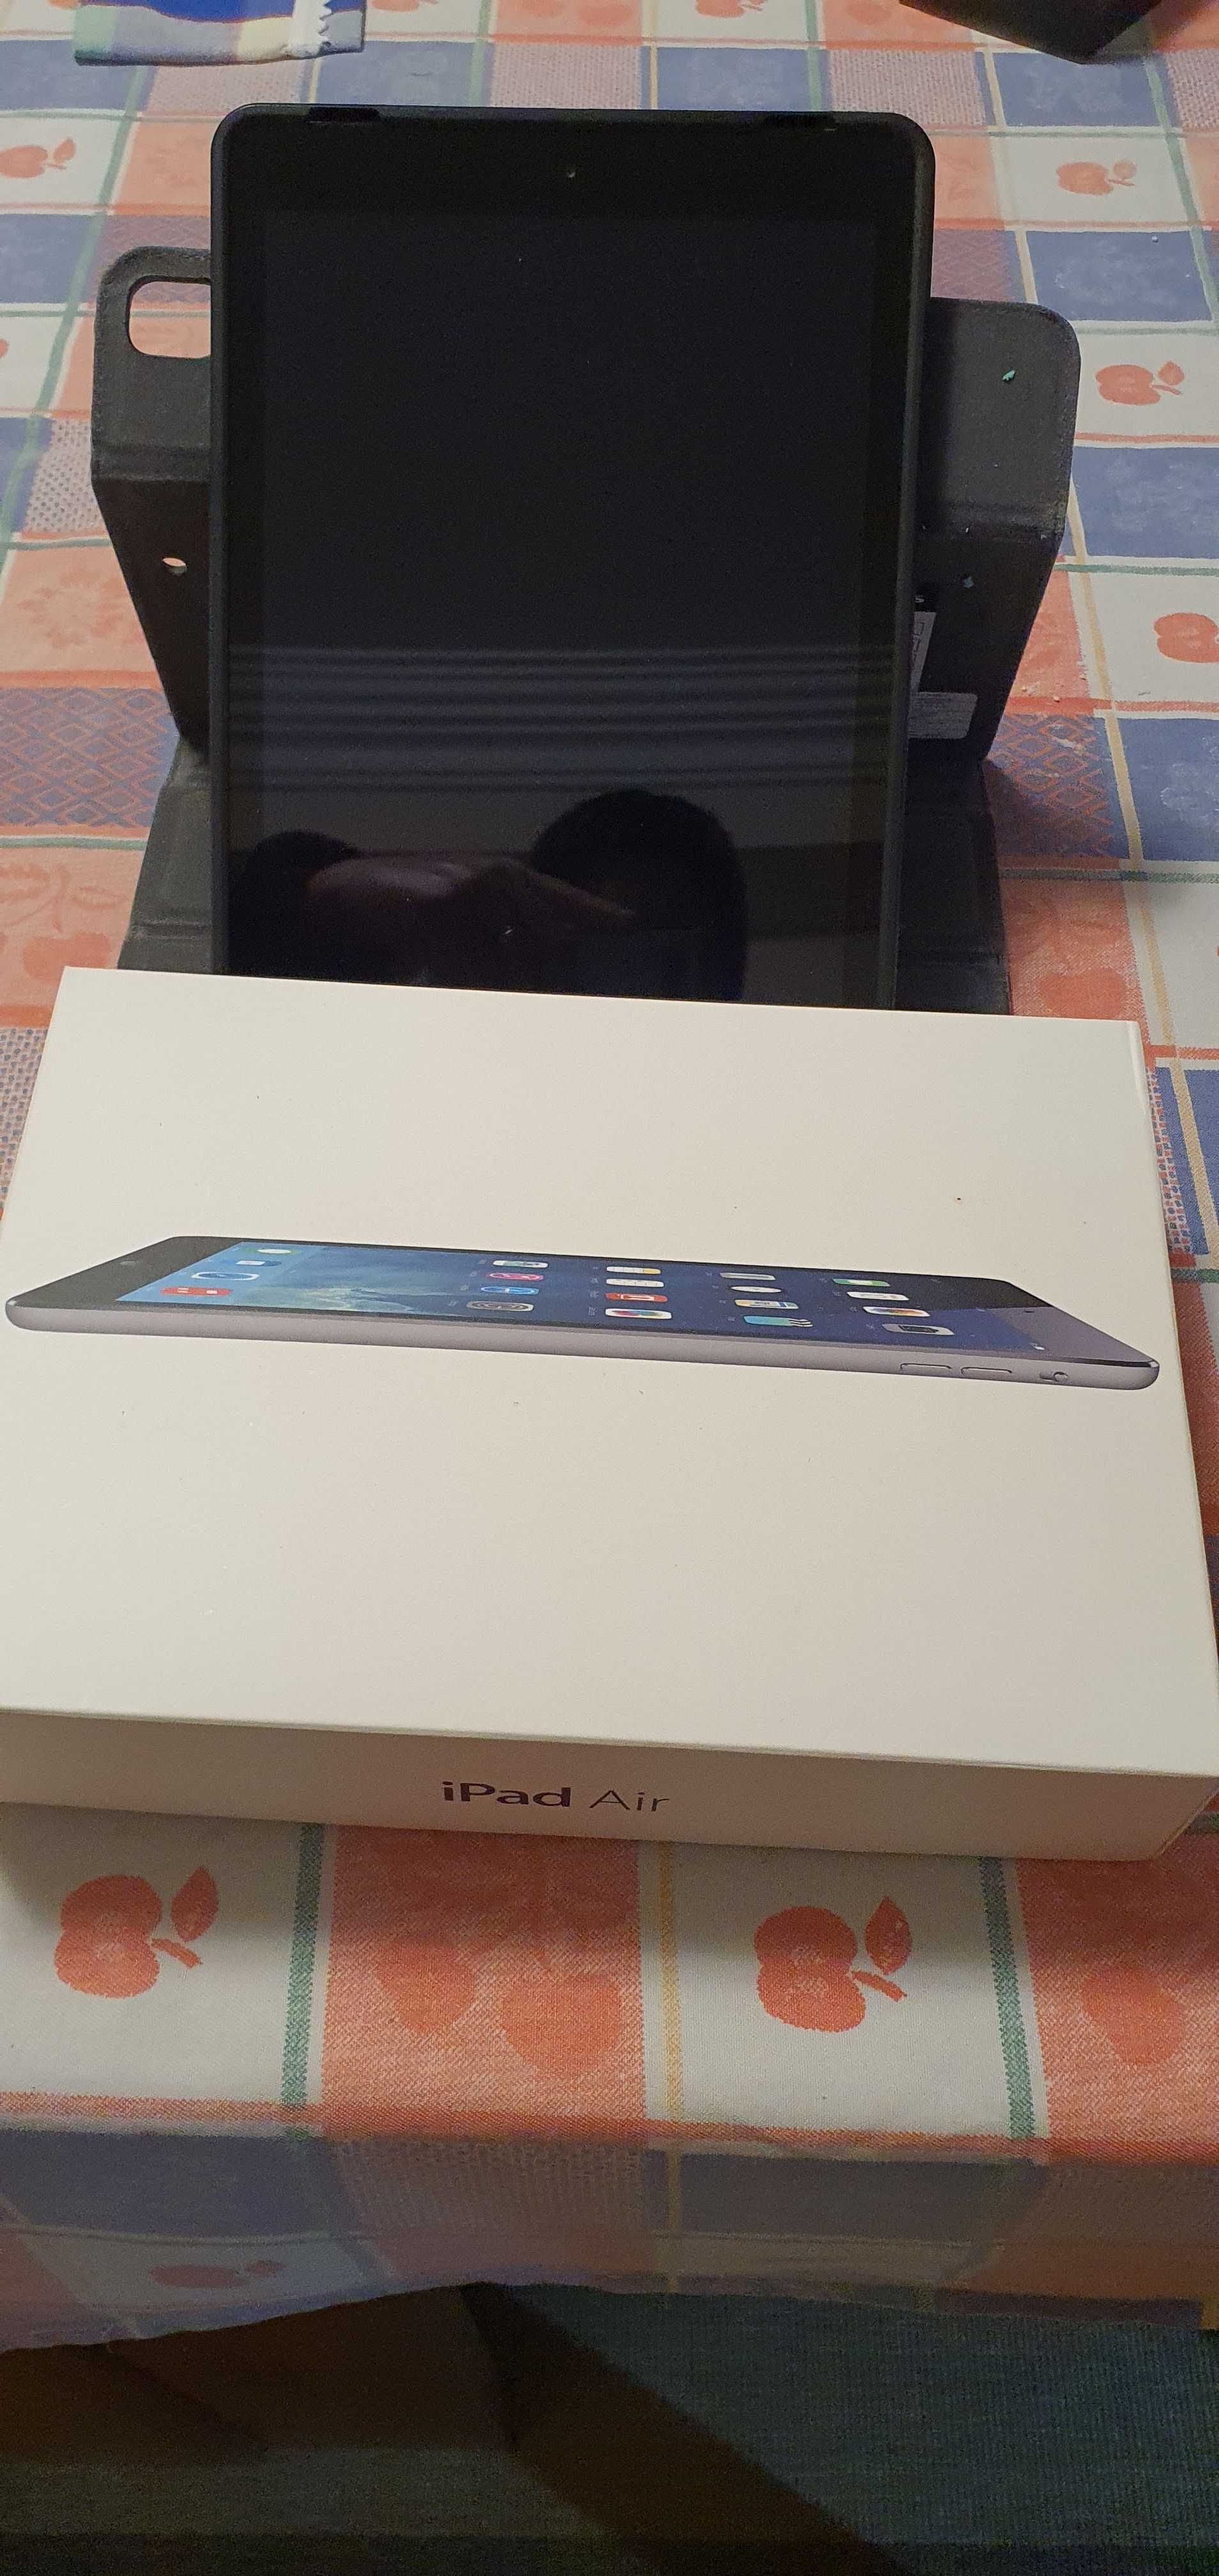 iPad Air (2013) 32GB Wi-Fi + 4G